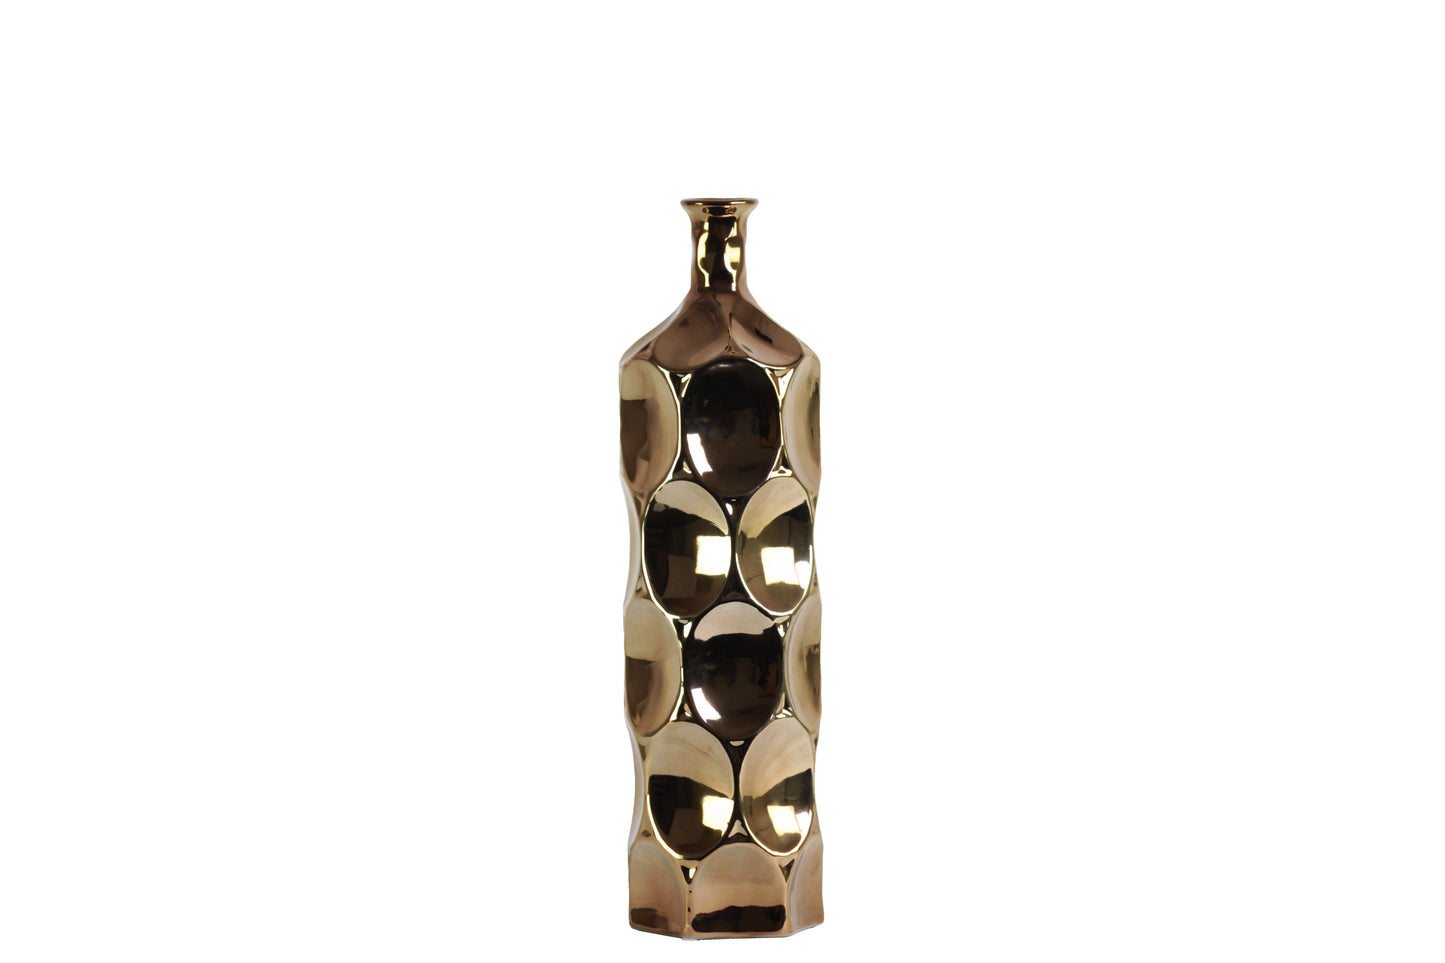 Ceramic Round Bottle Vase Dimpled Polished Chrome Finish